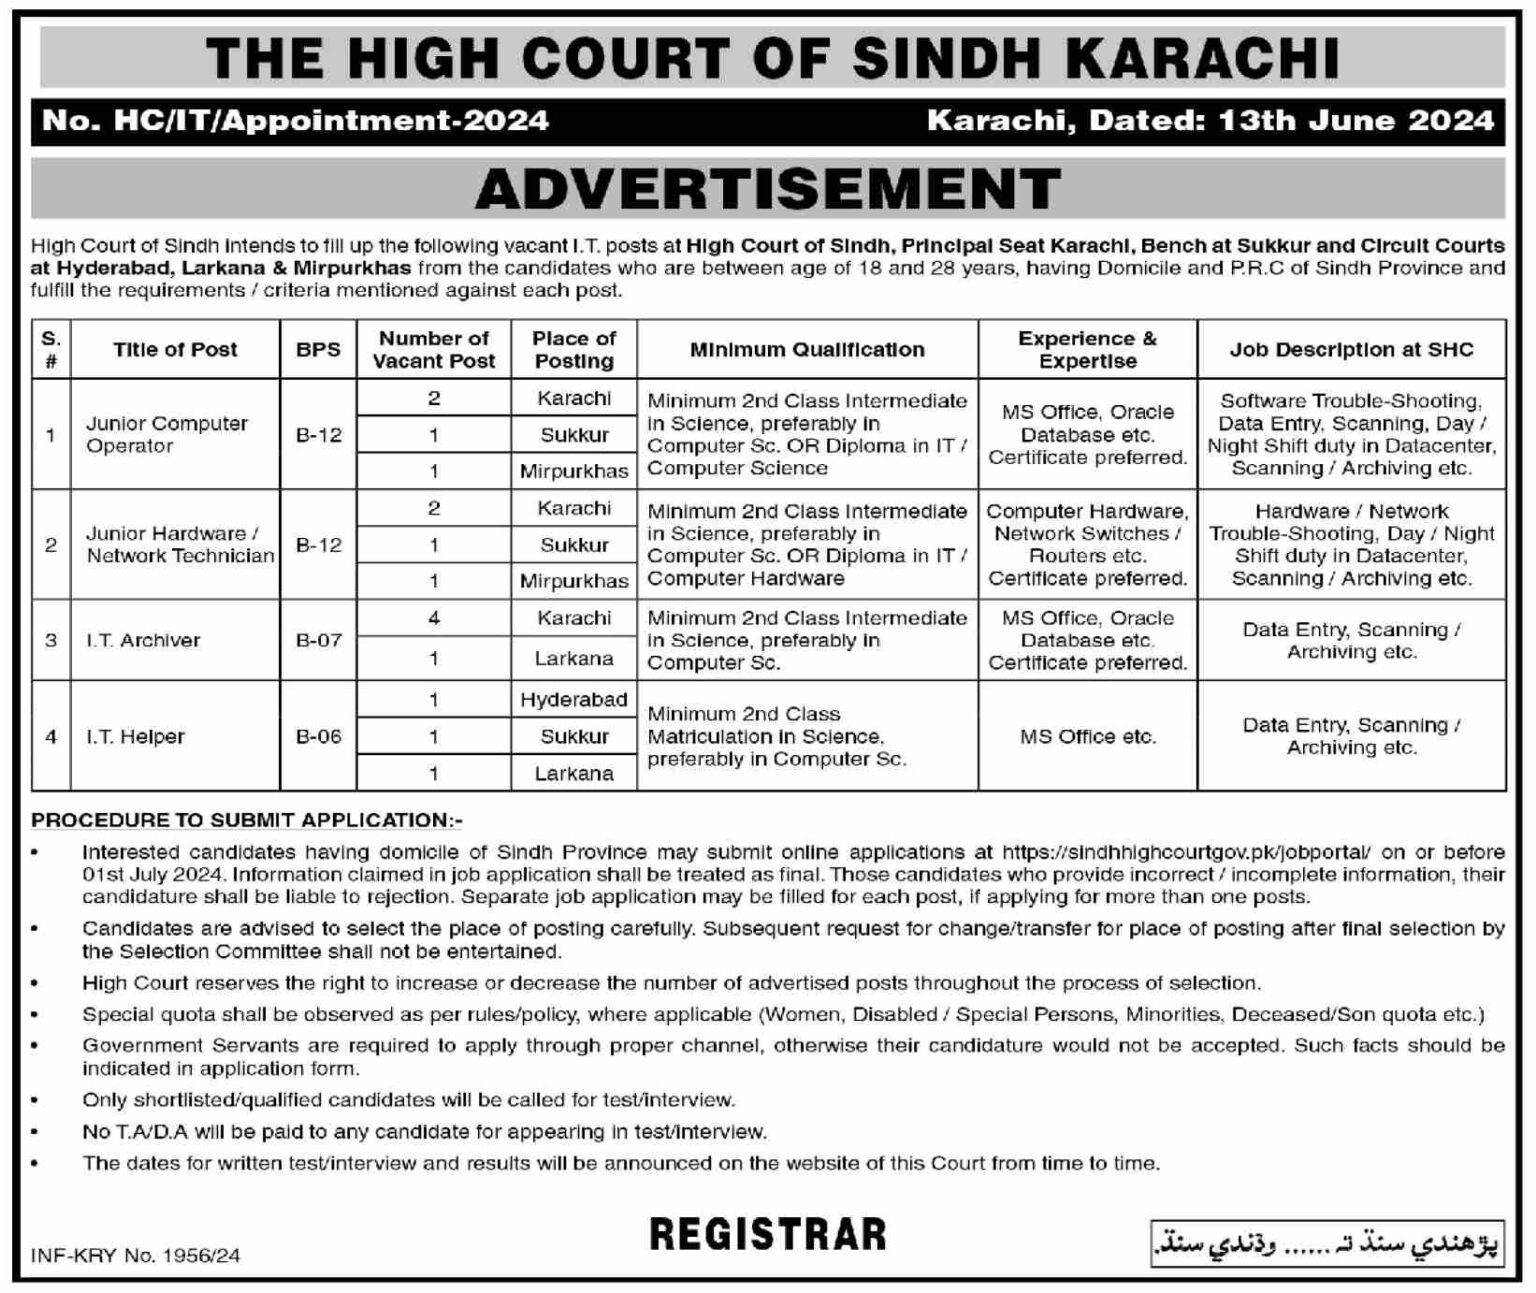 Sindh High Court Jobs 2024